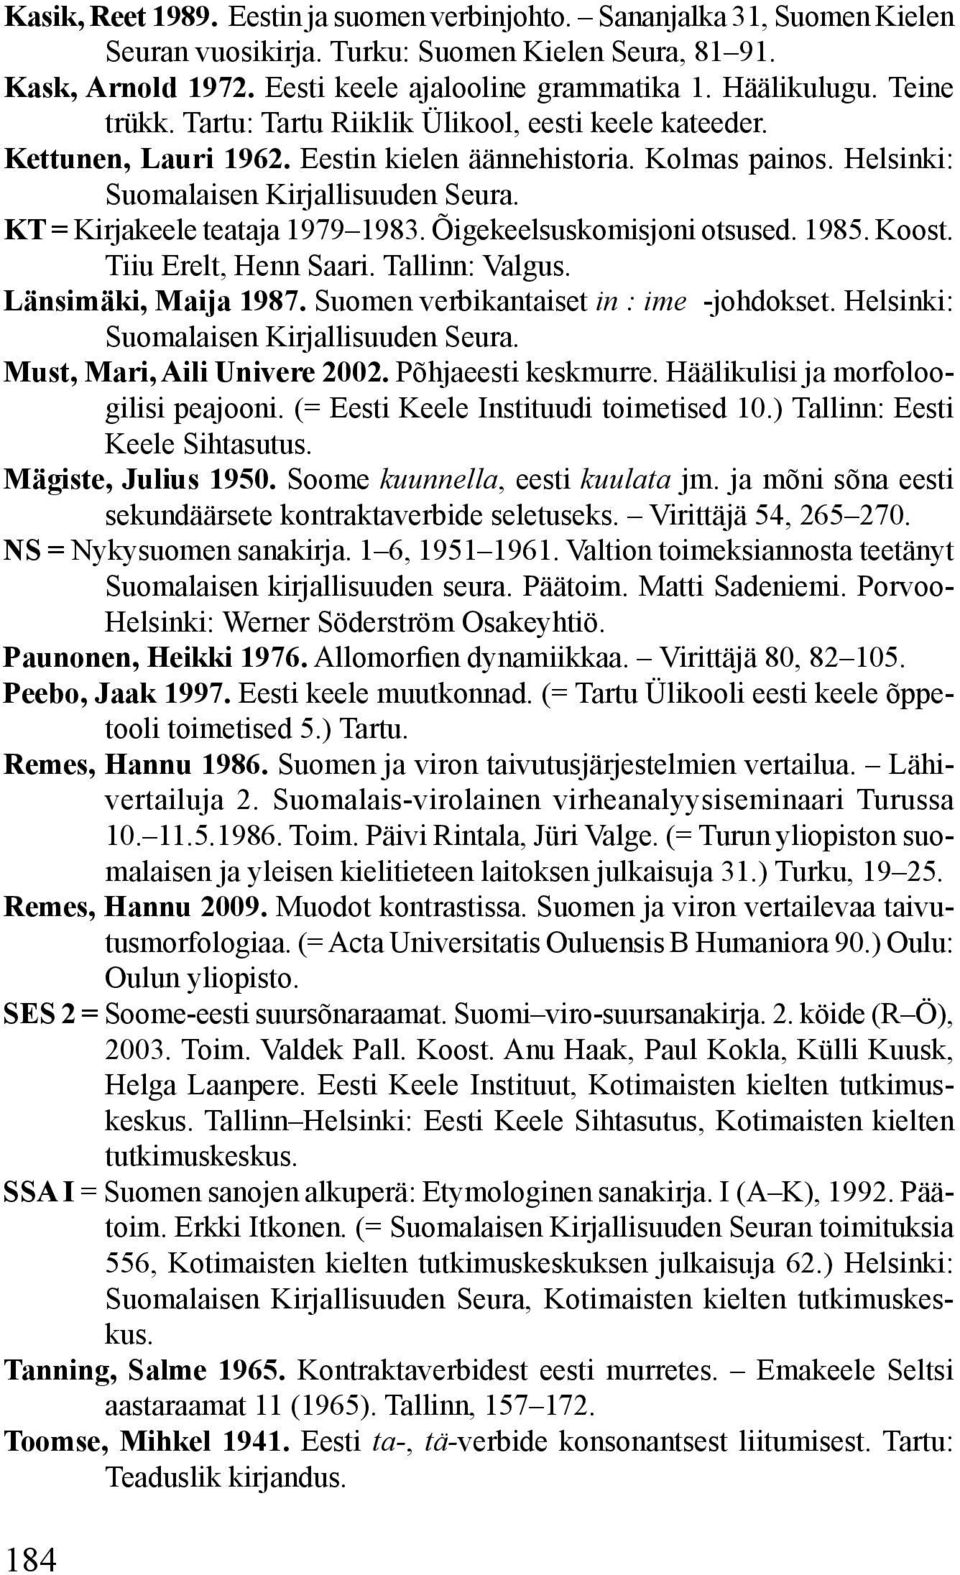 KT = Kirjakeele teataja 1979 1983. Õigekeelsuskomisjoni otsused. 1985. Koost. Tiiu Erelt, Henn Saari. Tallinn: Valgus. Länsimäki, Maija 1987. Suomen verbikantaiset in : ime -johdokset.